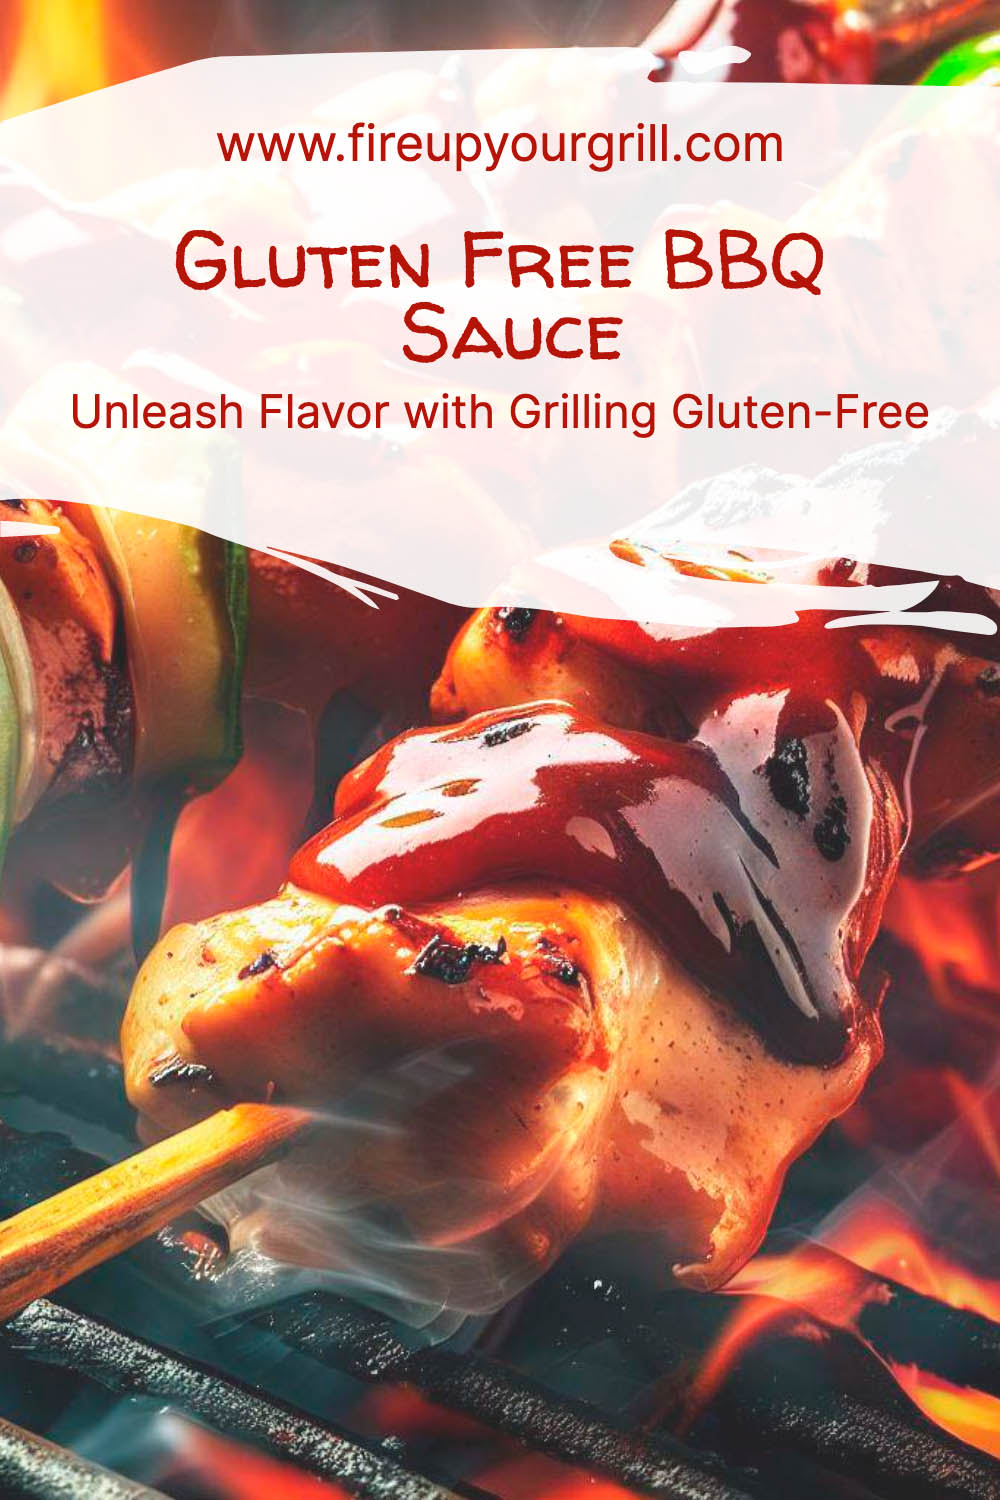 Gluten Free BBQ Sauce: Unleash Flavor with Grilling Gluten-Free